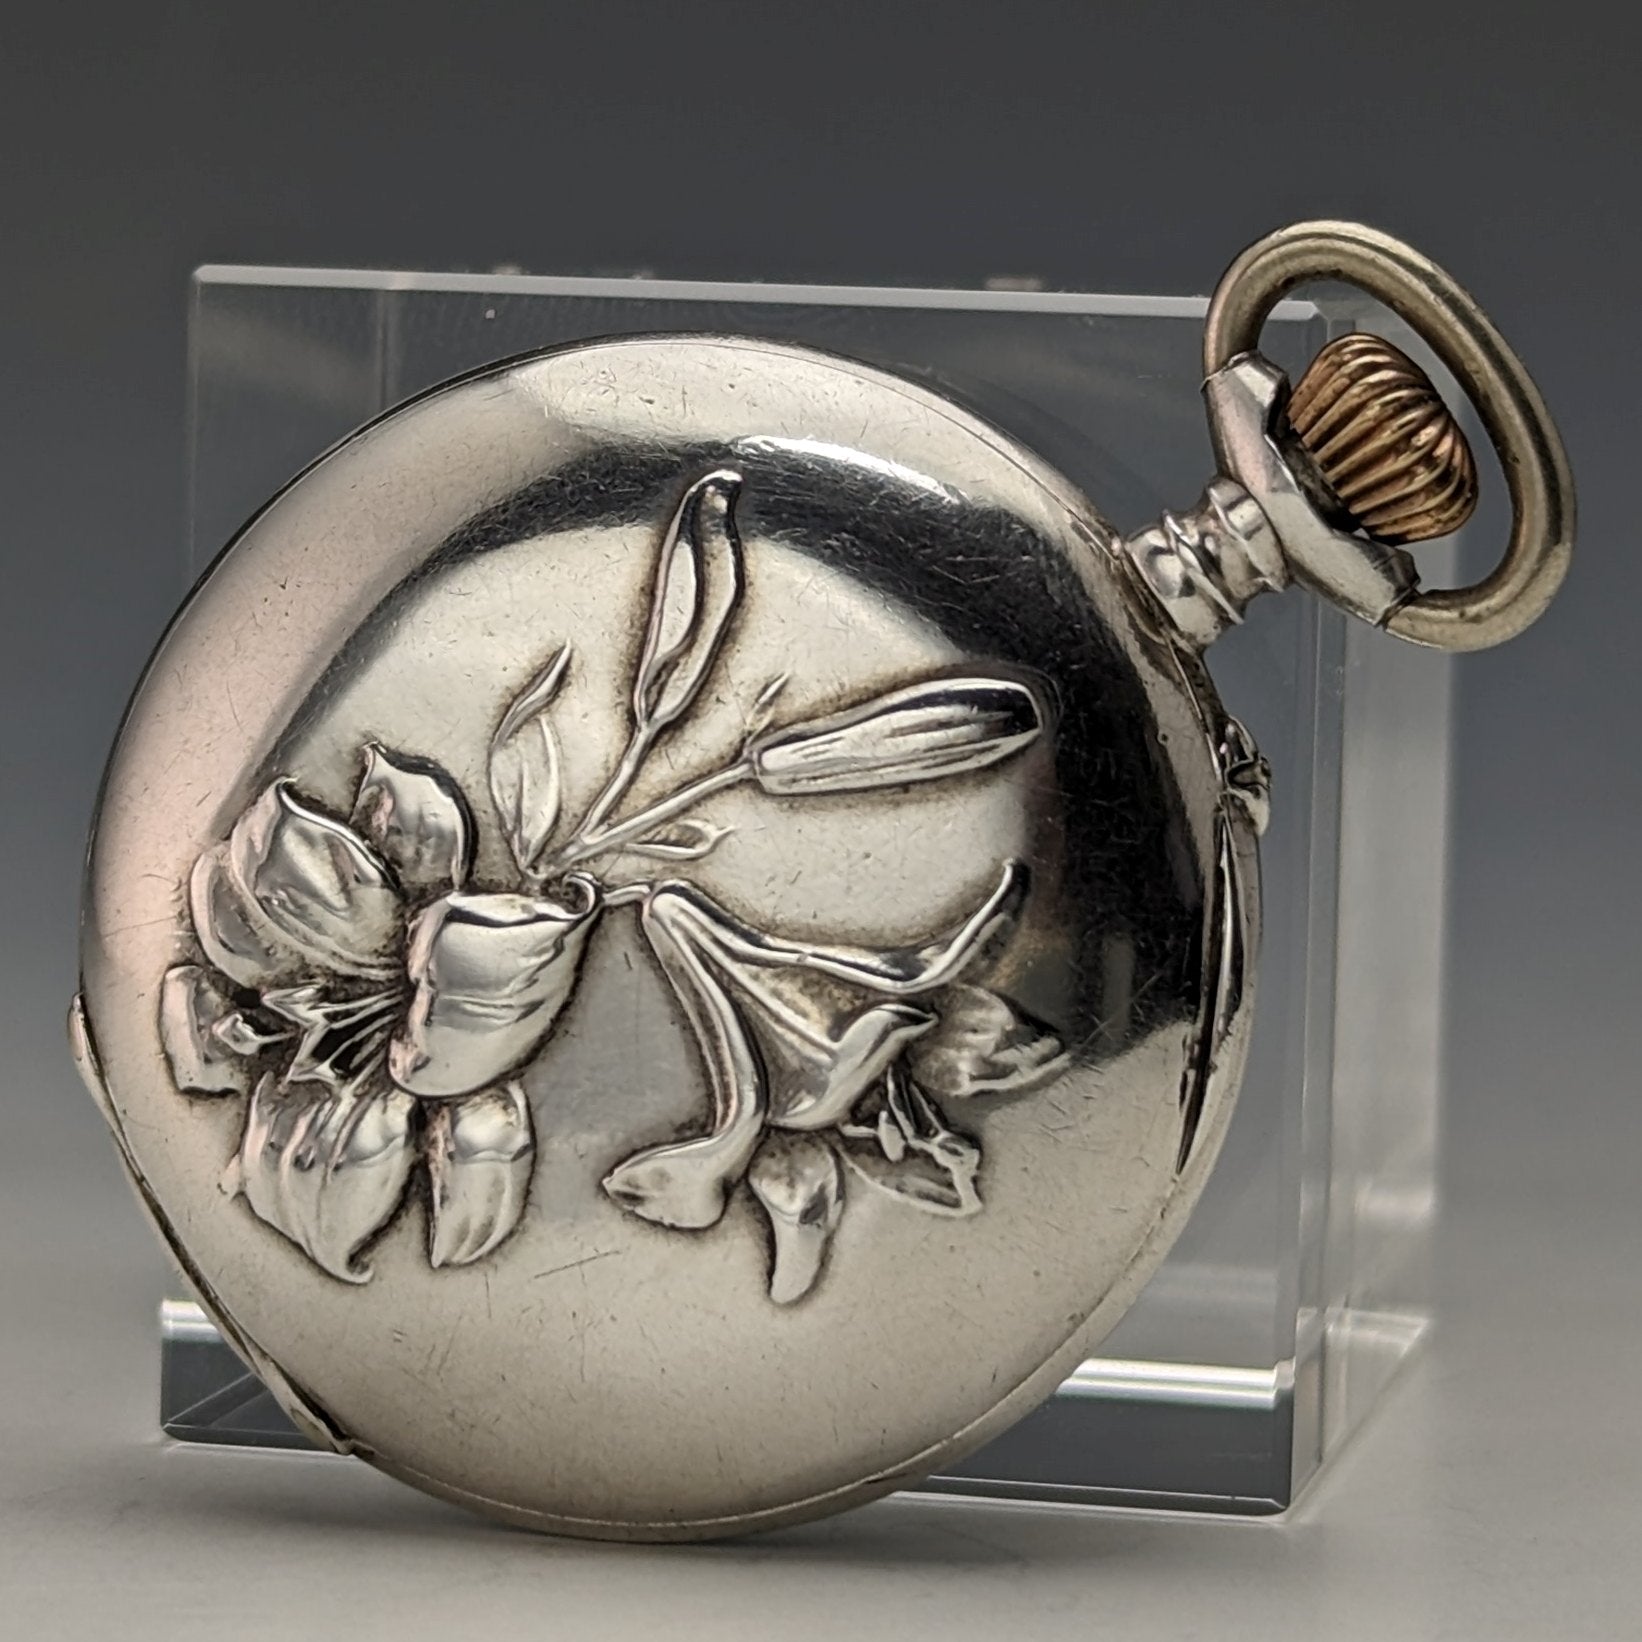 目立った傷や汚れのない美品機能1900年頃 アンティーク スイス製 小型懐中時計 彫刻銀側ケース 動作良好